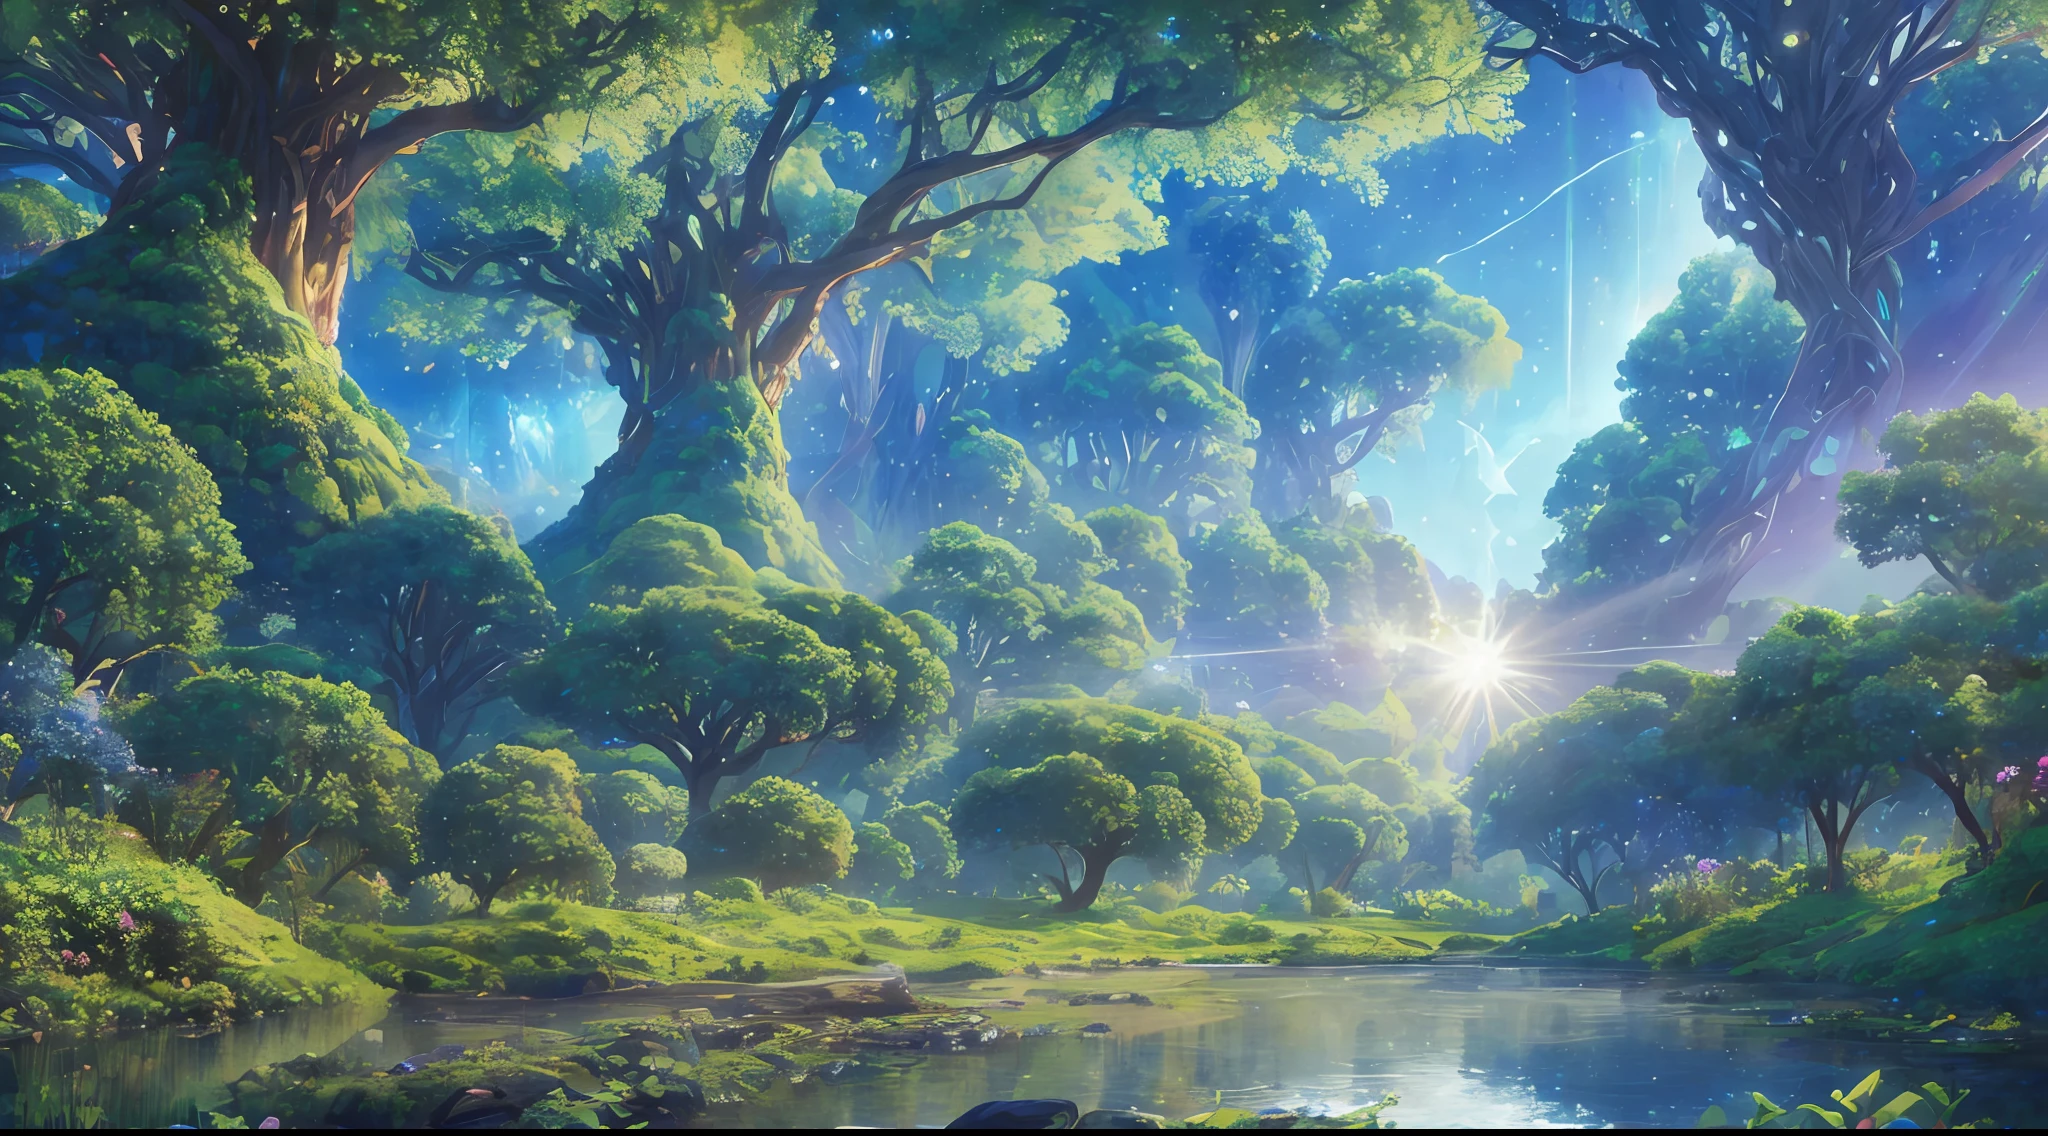 Illustration eines hyperrealistischen , jenseitig, Ultrasky-Szene mit einem riesigen Ganzkörper-Kristallbaum,sehr detaillierte und zauberhafte Beleuchtung, komplizierte Walddetails, Vegetation und Fluss rund, solarpunk ,Landschaft, riesiger Baum, wunderschönes Blattwerk mit schöner Beleuchtung und realistischen Proportionen, als wäre es ein filmischer Hintergrund, 8k, höchste Qualität, Meisterwerk, Wolken und Sterne am Himmel.